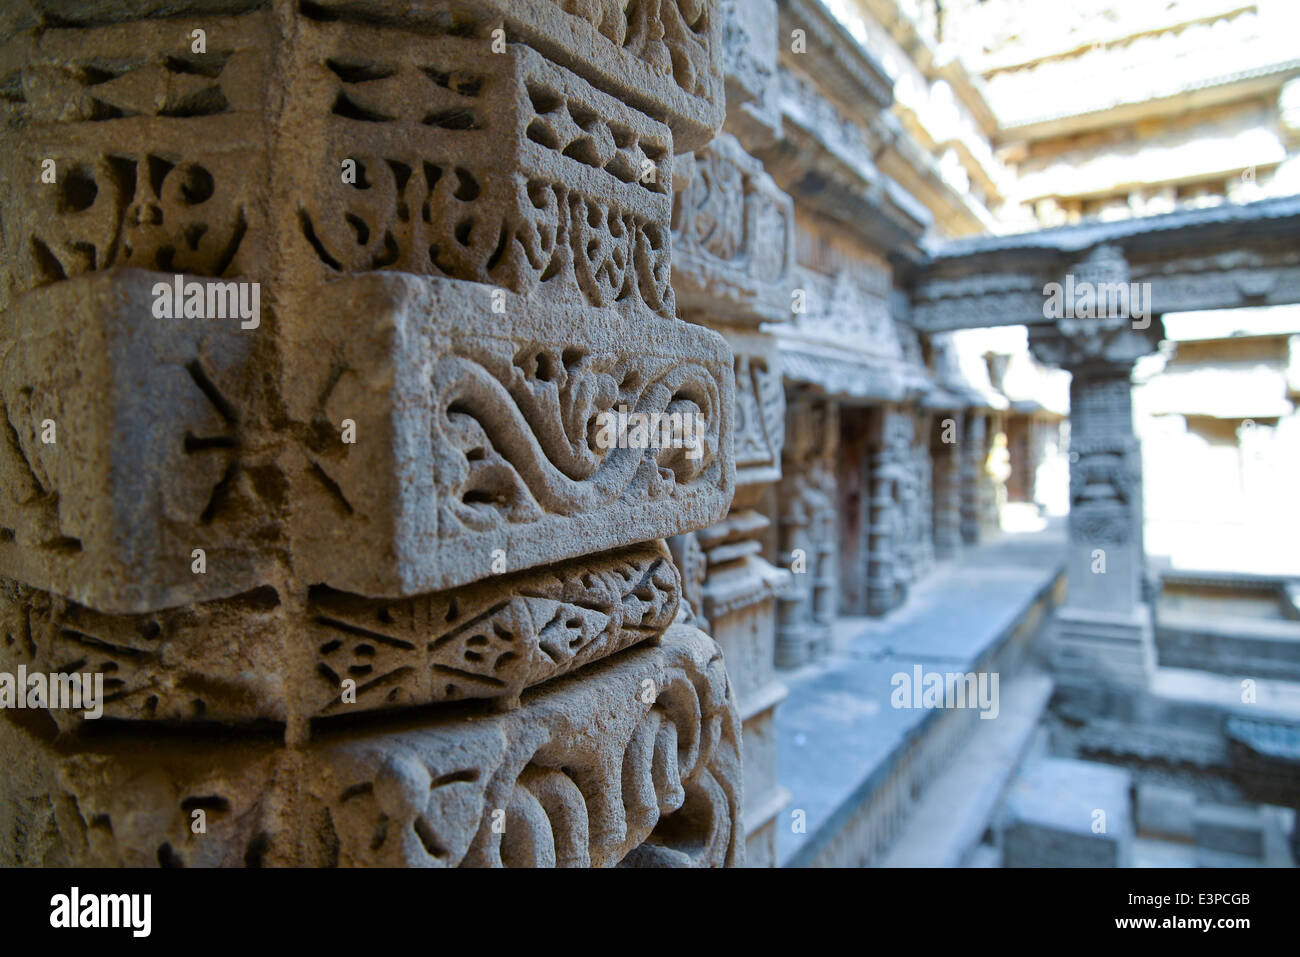 Le intricate sculture di struttura dei "Rani-ki-Vav'. Rani Ki Vav è uno dei più raffinati pozzetto gradini Nei punti in India. Si tratta di un stepwell in Gujarat costruito nel XI secolo in memoria di re Bhimdev I della dinastia Solanki. Il stepwell è stato approvato dall'UNESCO come Sito del Patrimonio Mondiale per la sua eccezionale esempio di sviluppo tecnologico in utilizzando le risorse sotterranee. (Foto di Nisarg Lakhamani/Pacific Stampa) Foto Stock